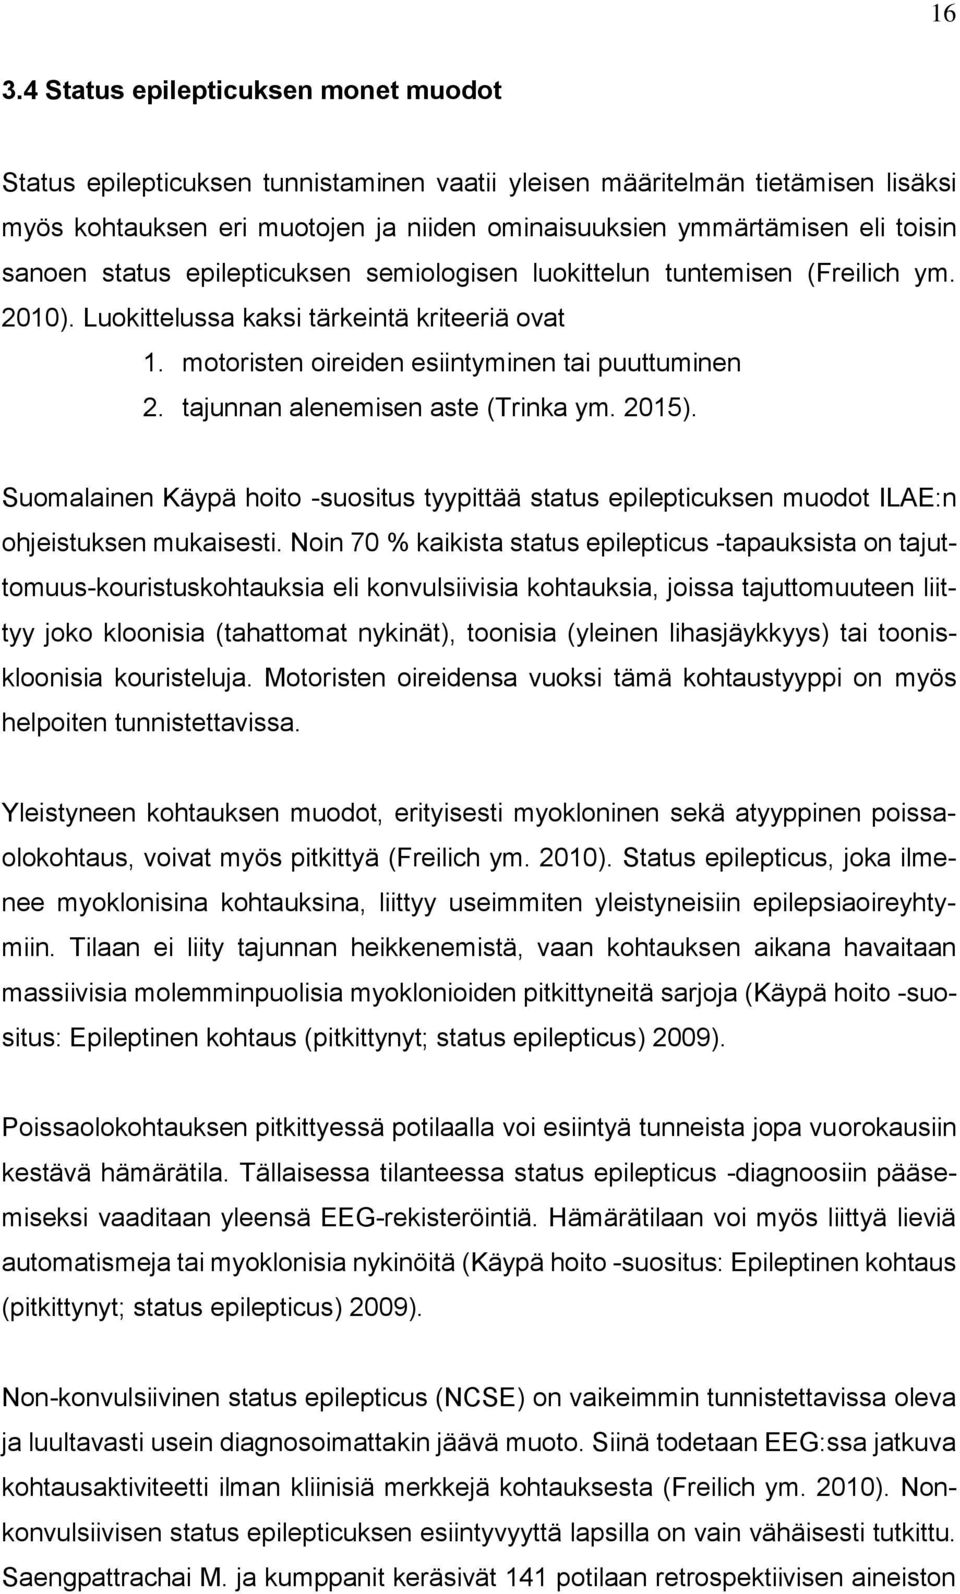 tajunnan alenemisen aste (Trinka ym. 2015). Suomalainen Käypä hoito -suositus tyypittää status epilepticuksen muodot ILAE:n ohjeistuksen mukaisesti.